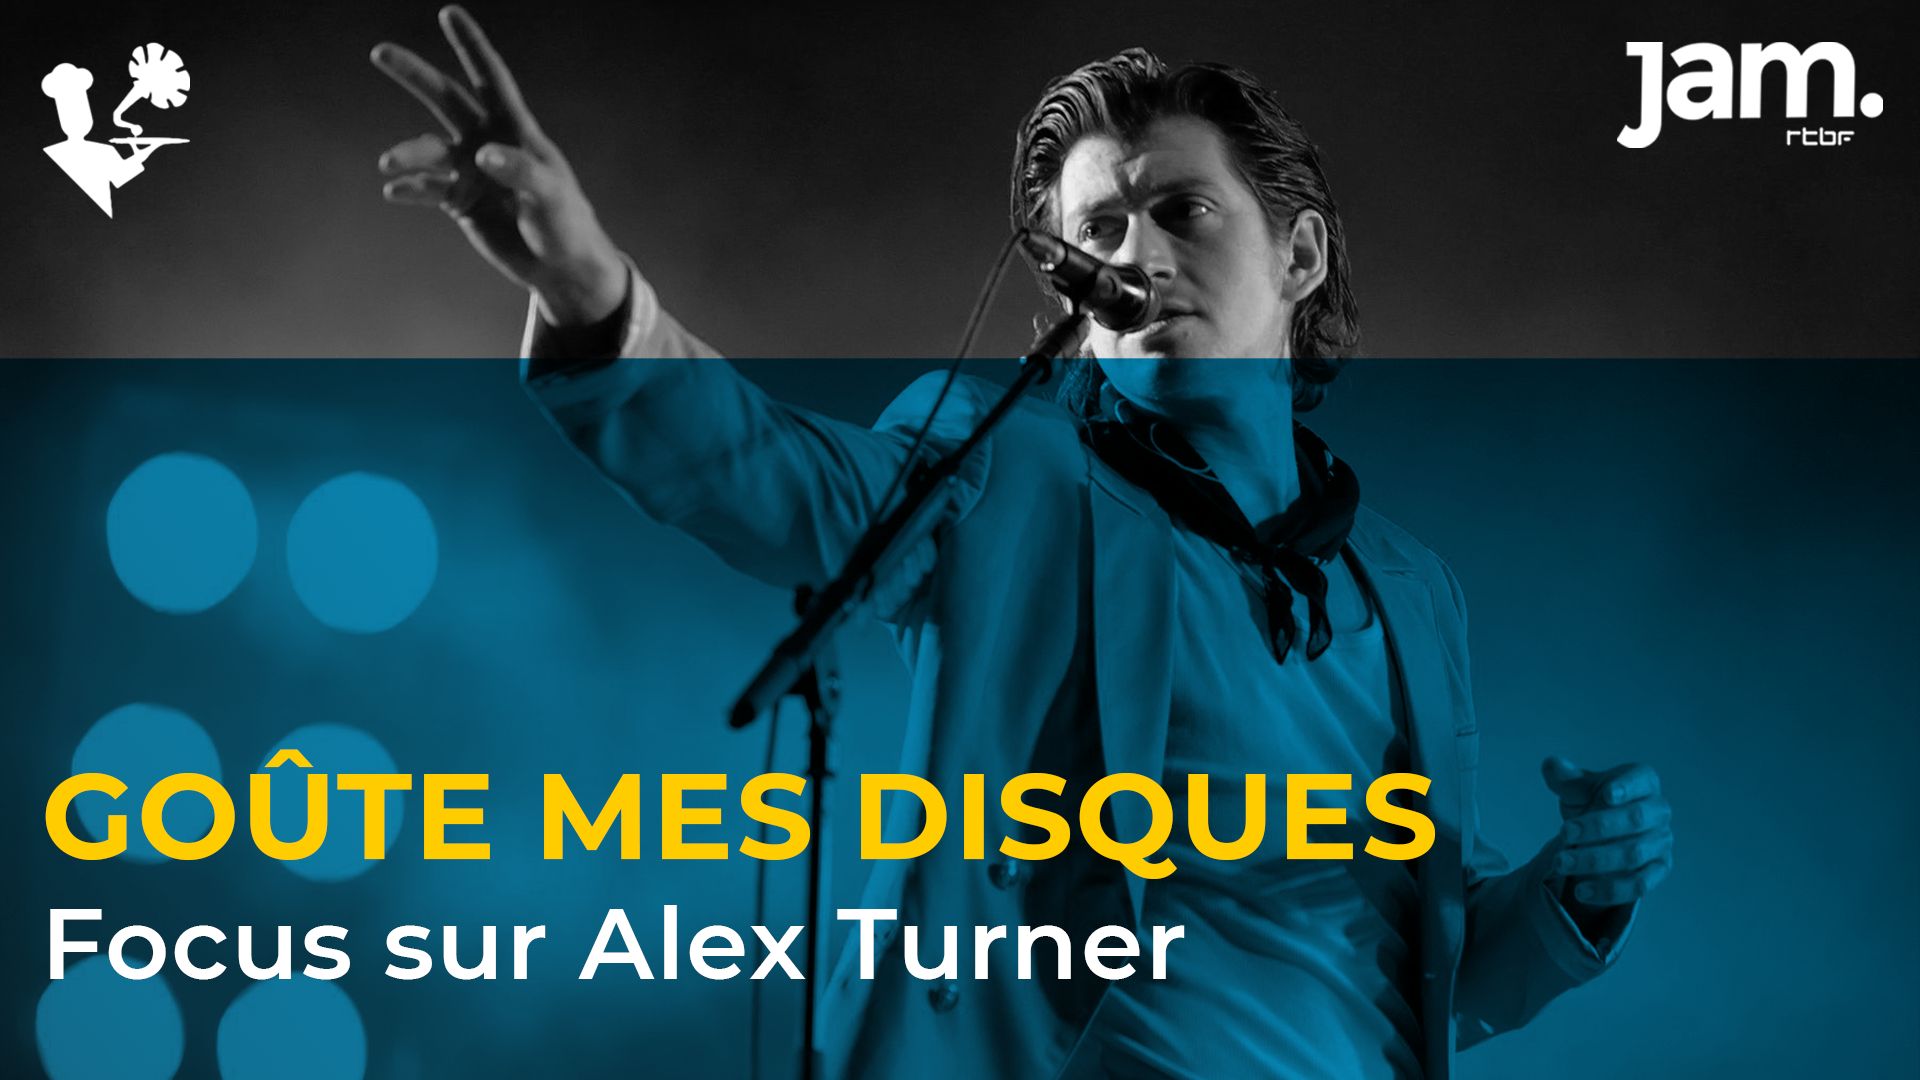 Alex Turner est le sujet de la nouvelle émission Goûte Mes Disques diffusée sur Jam.